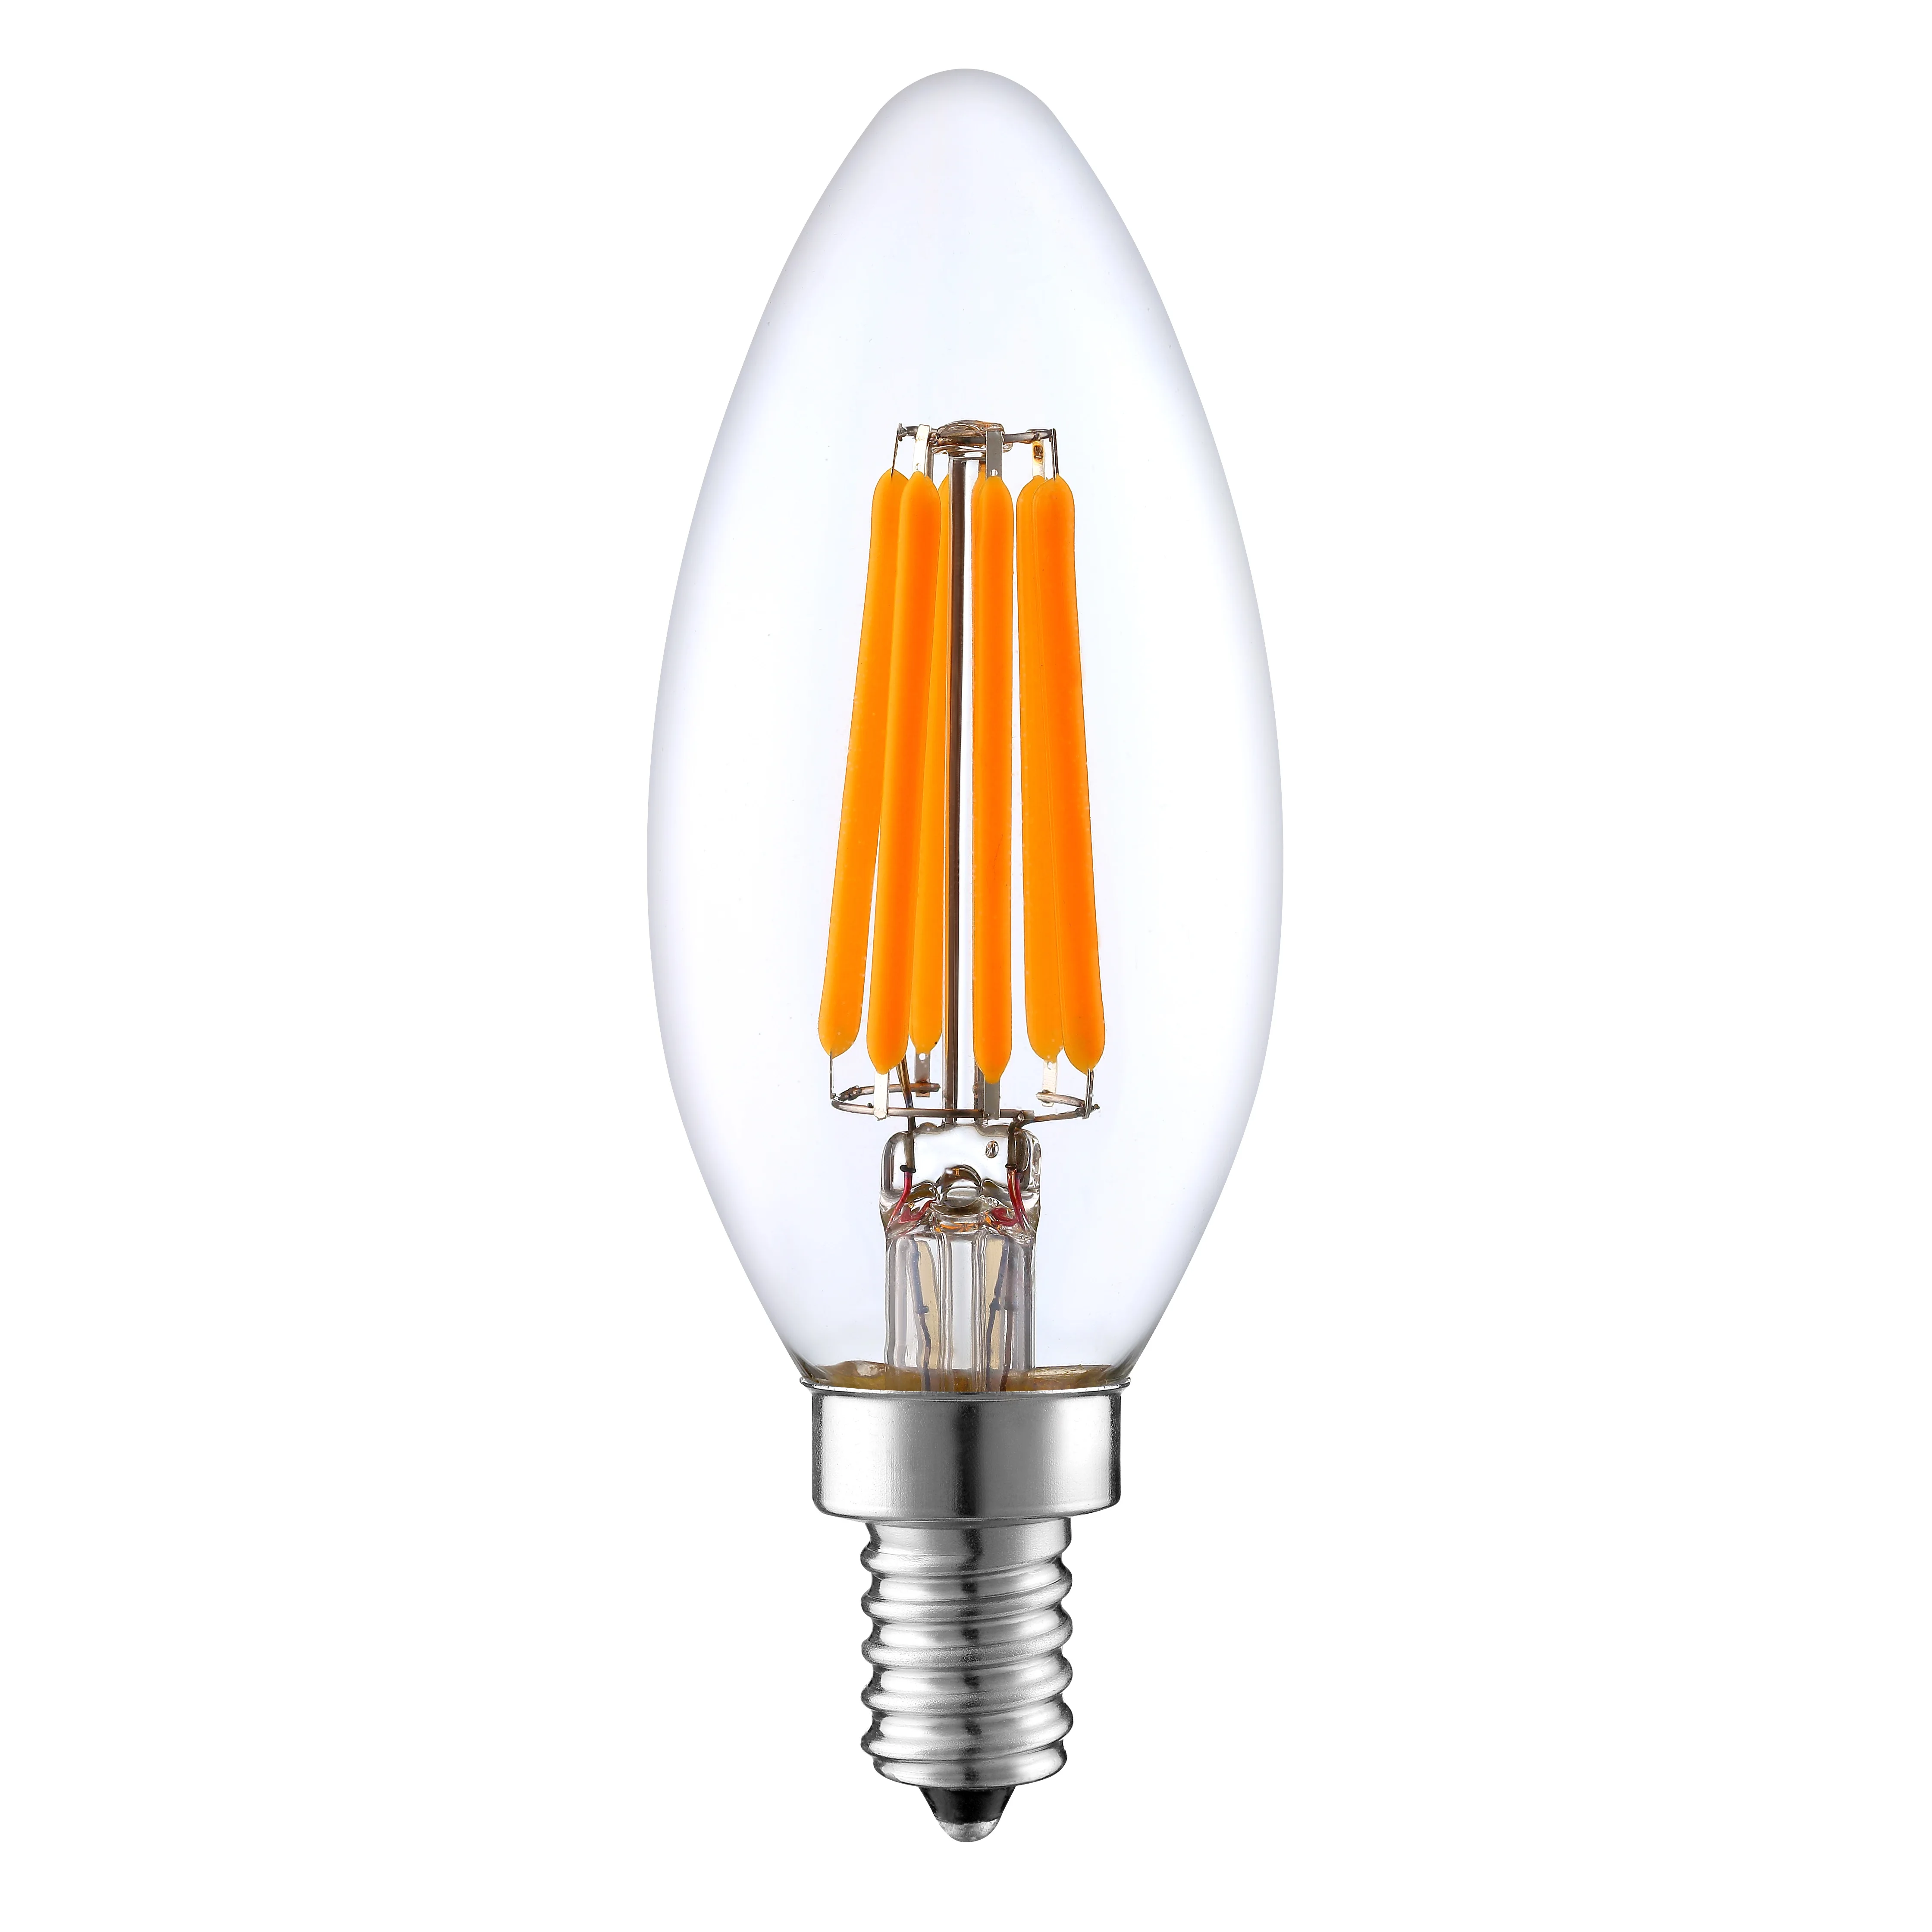 Dimmable 1w 3w 5w 7w E14 E12 C32 Led Candle Bulb - Buy Led Candle Bulb,3w Candle Bulb,7w Candle Bulb on Alibaba.com